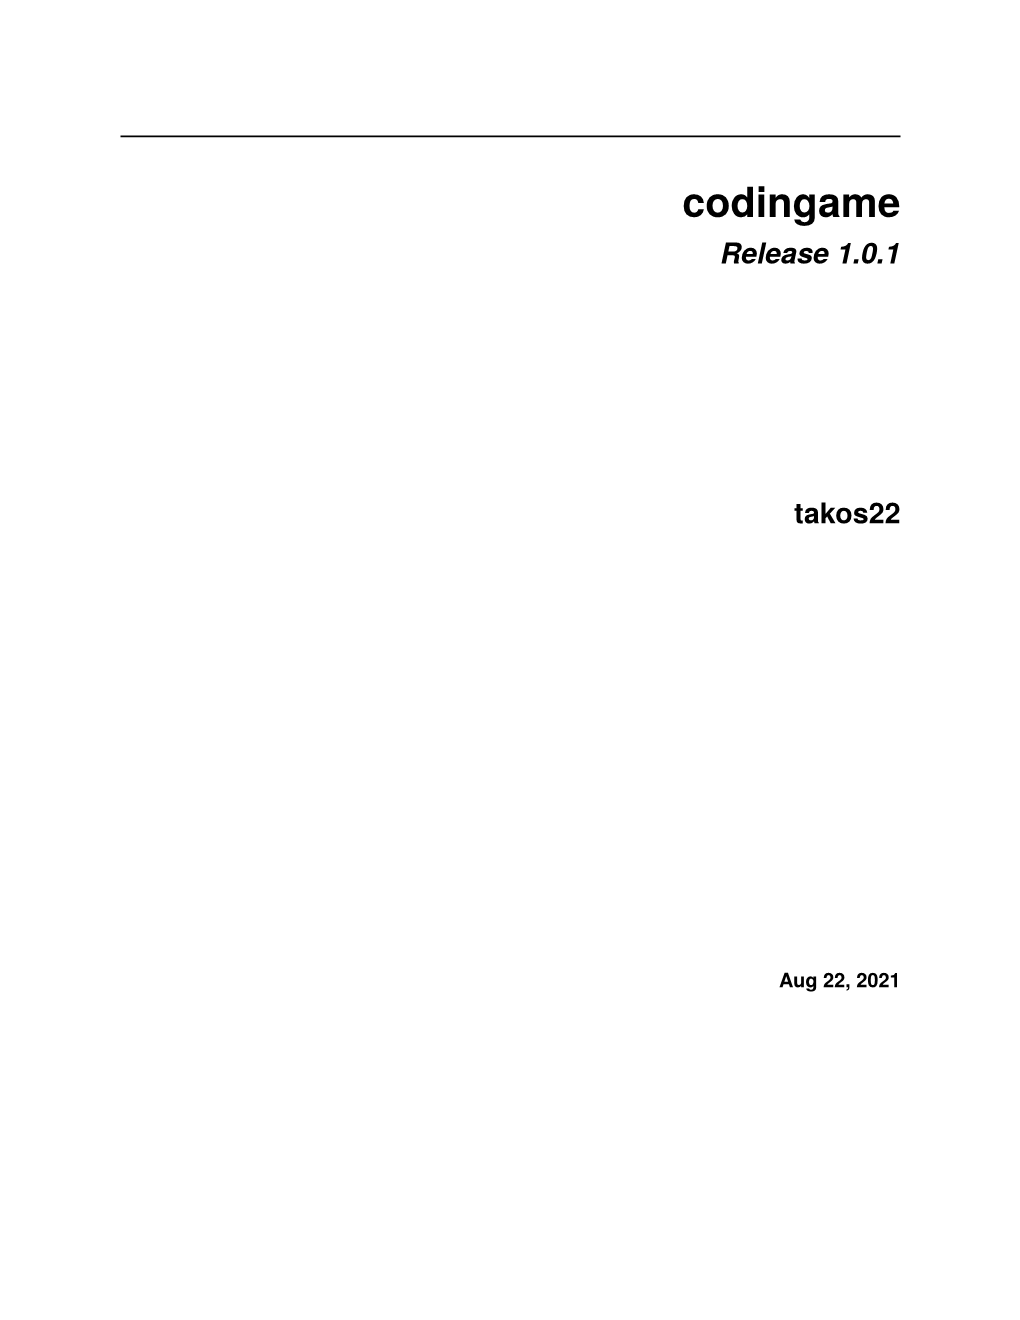 Codingame Release 0.3.5 Takos22